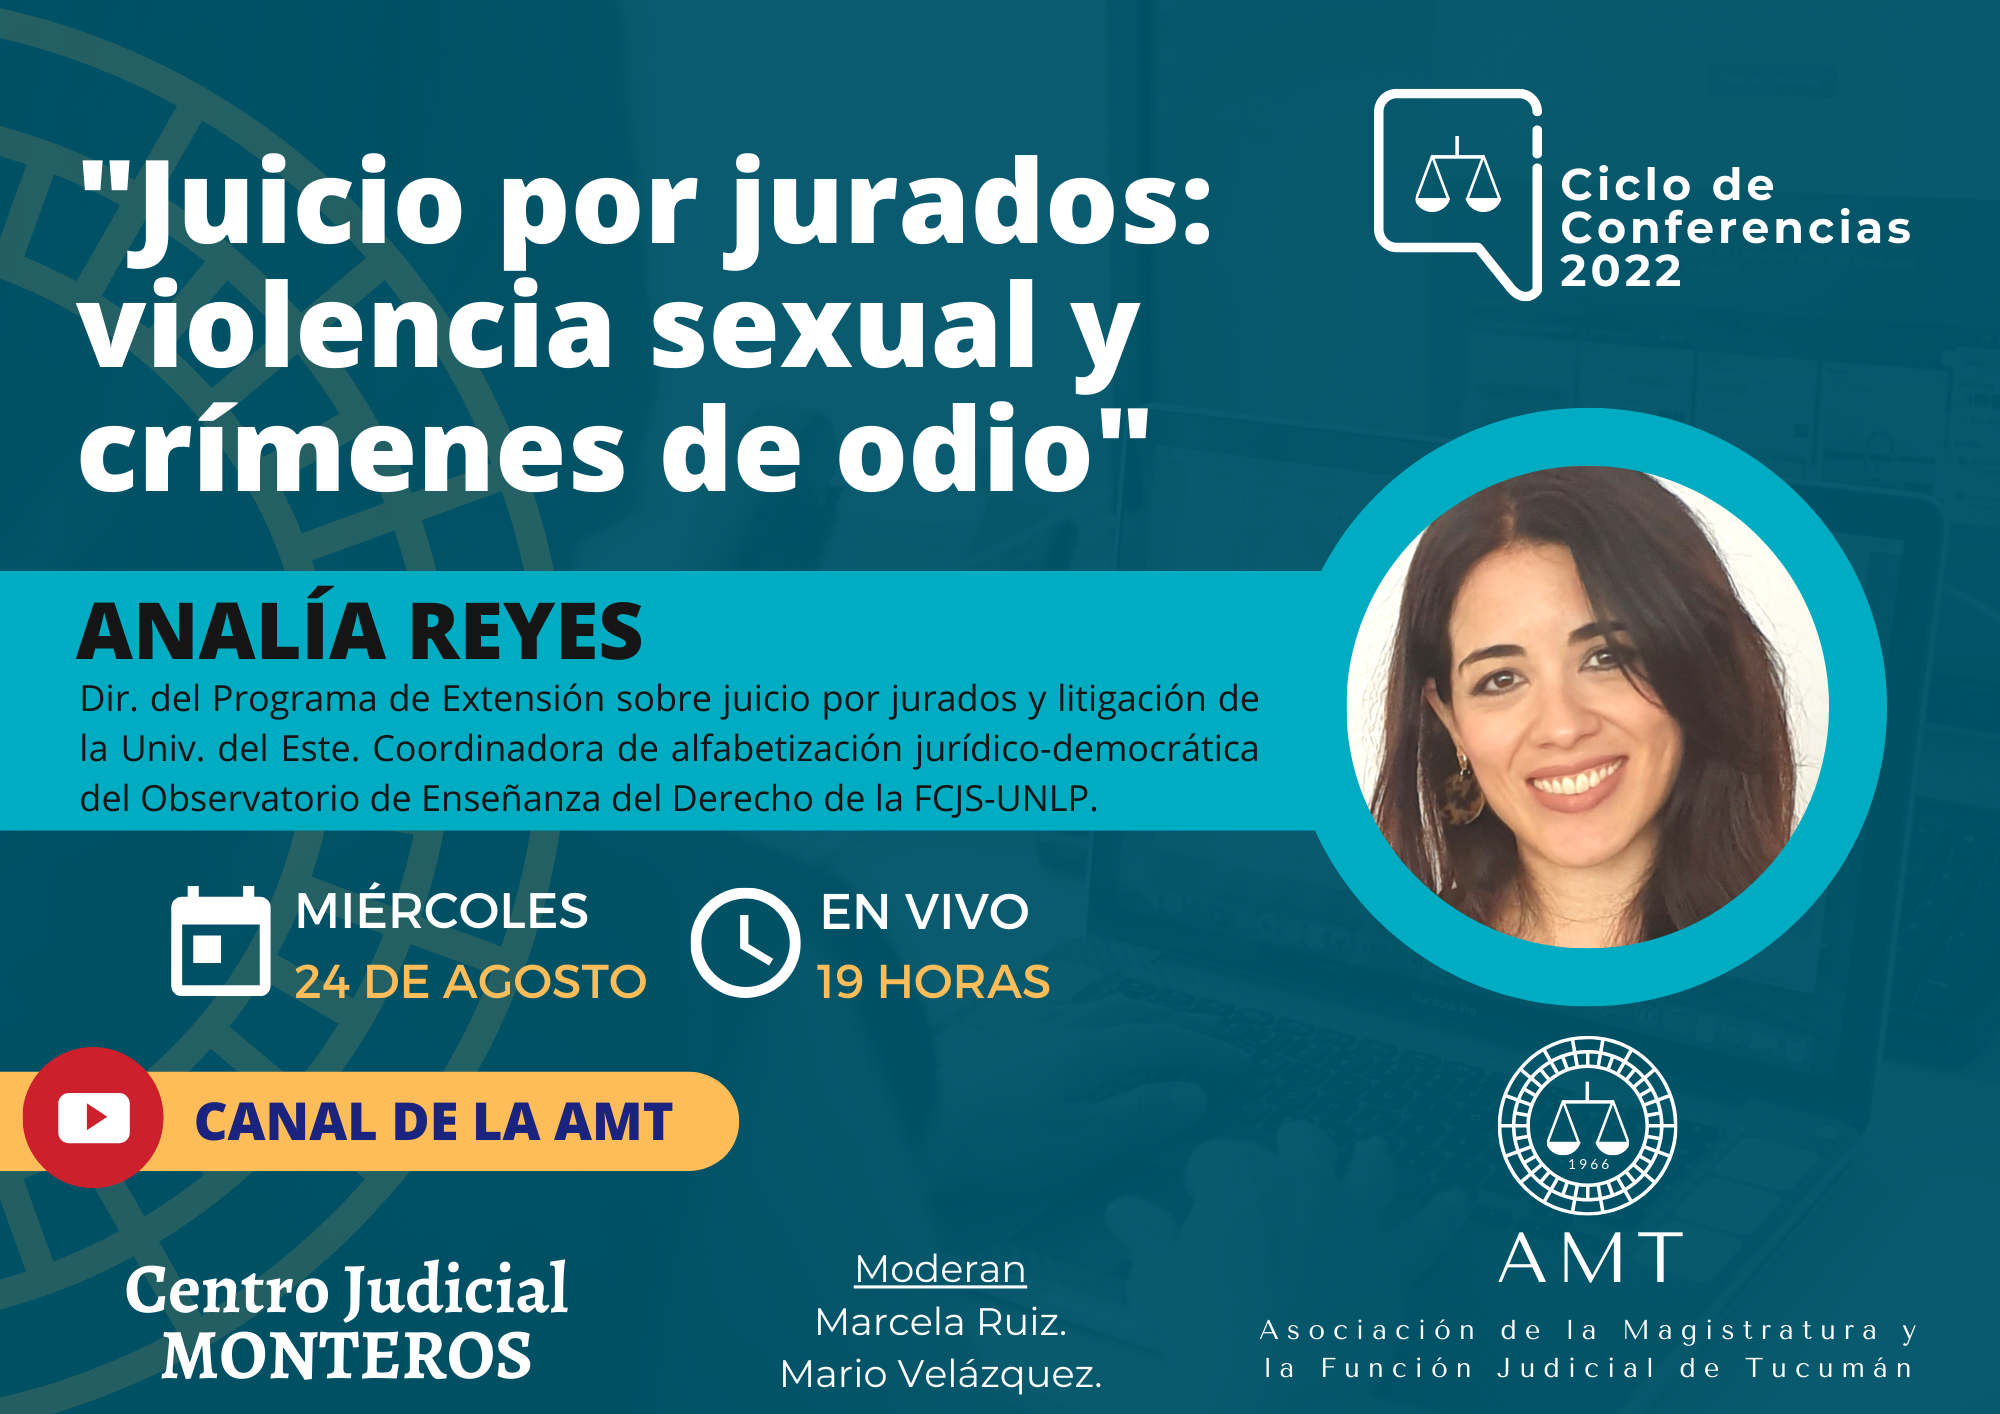 Vuelva a ver la conferencia de Analía Reyes «Juicio por jurados: violencia sexual y crímenes de odio»